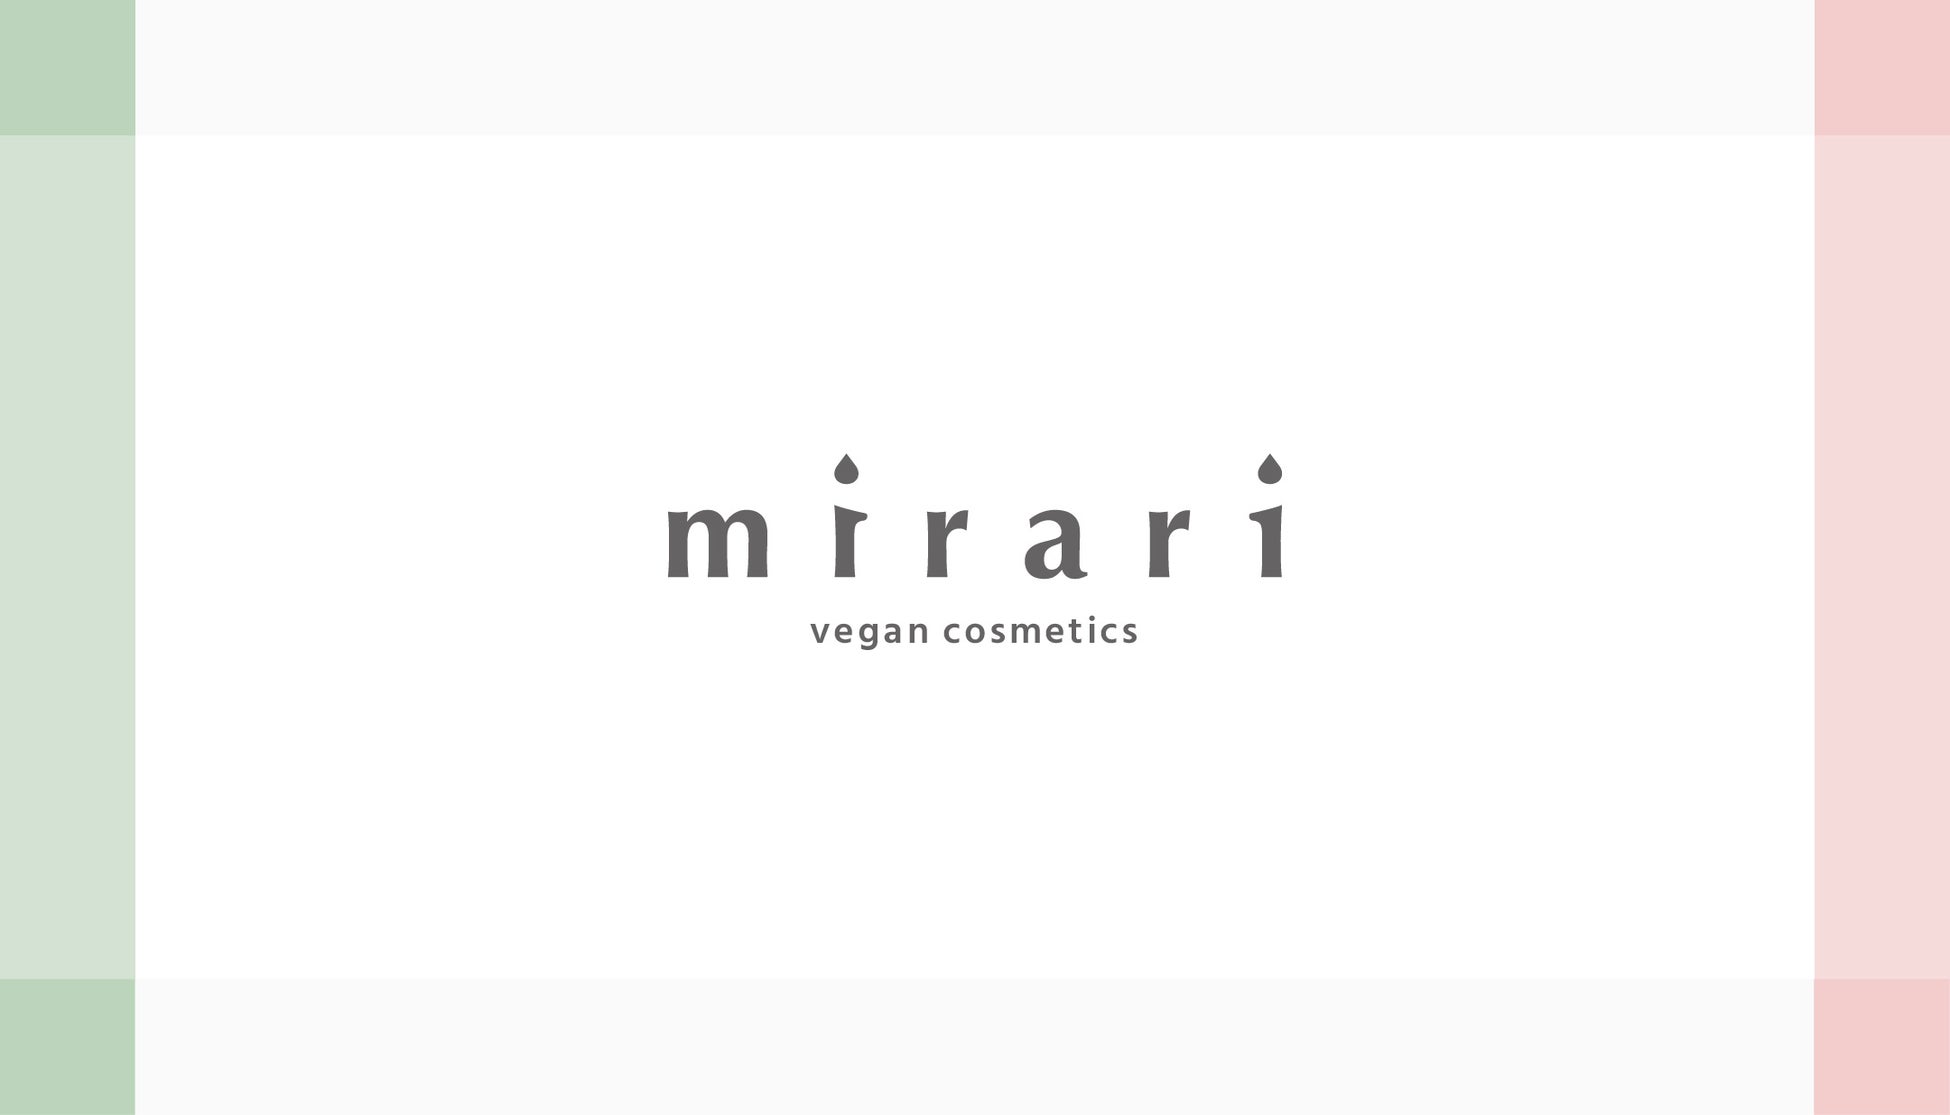 100%ヴィーガンコスメブランド「mirari」は、ファンコミュニティー及びコンテンツ作りを大事にのサブ画像1